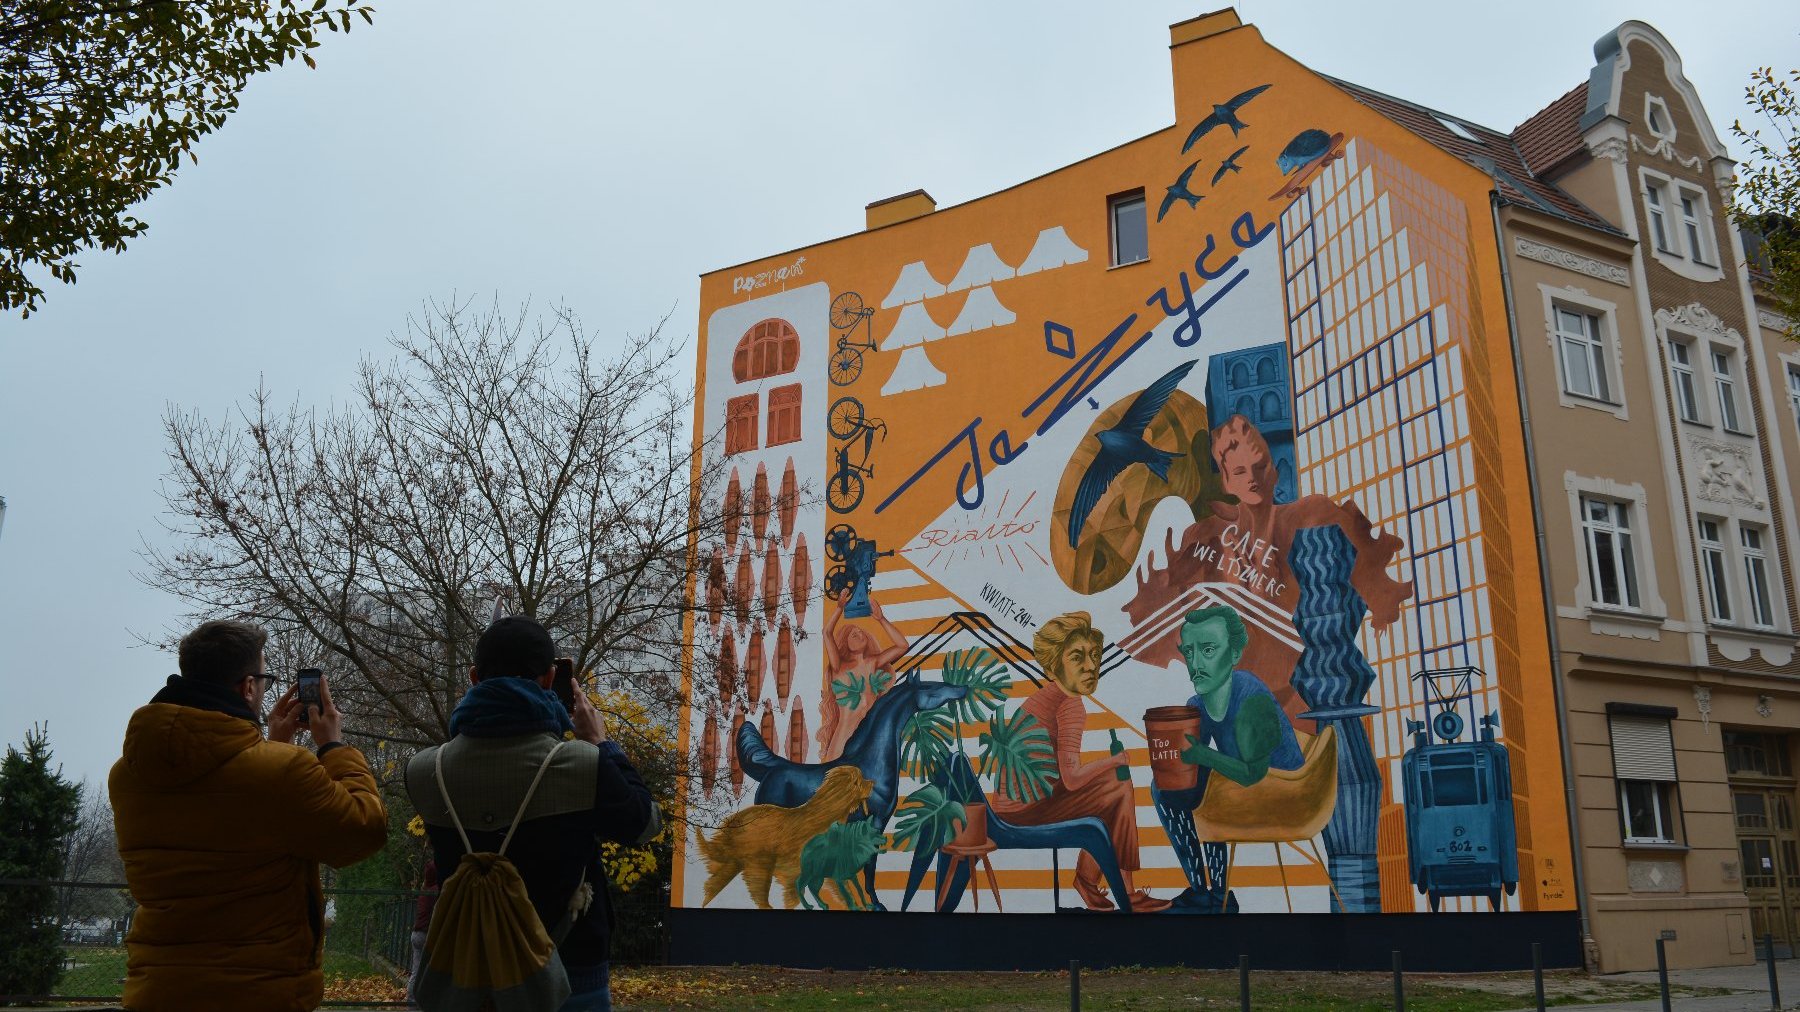 Galeria zdjęć przedstawia nowy mural na Jeżycach. Widać na nim m.in. dwóch poetów Słowackiego i Mickiewicza. Obok znajduje się ulica z samochodami.